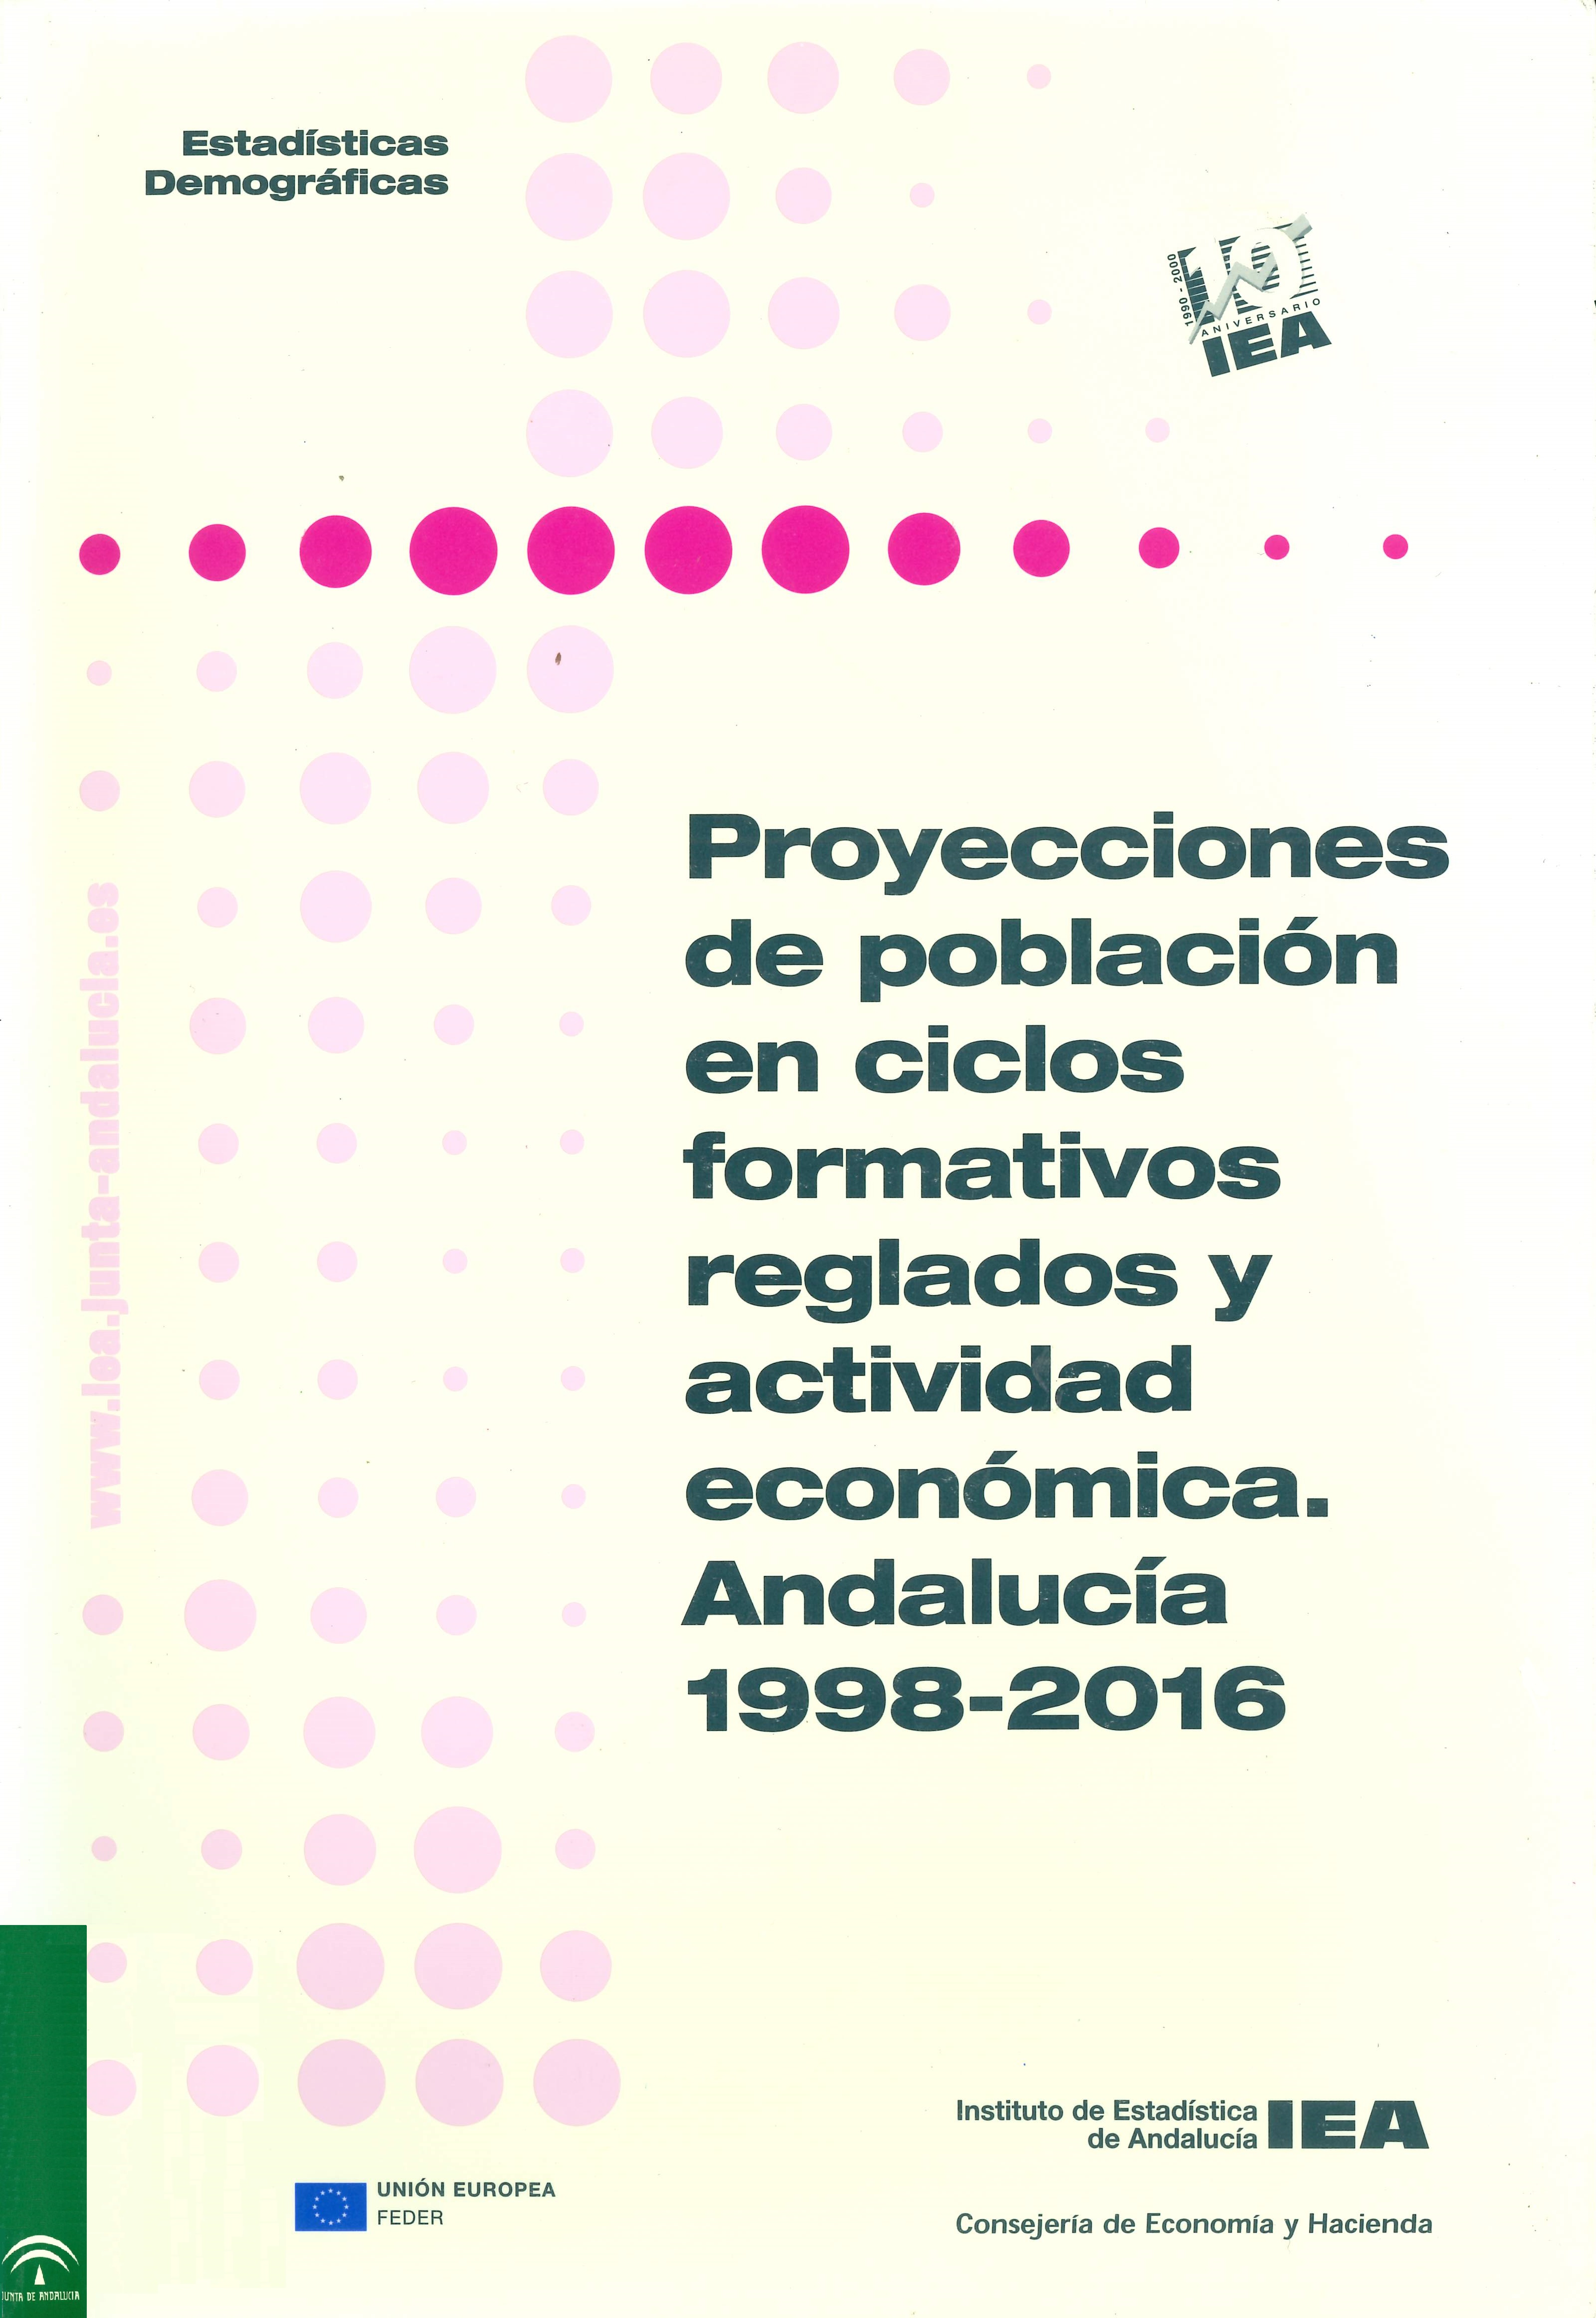 Imagen representativa de la publicación Proyecciones de población en ciclos formativos reglados y actividad económica: Andalucía 1998-2016